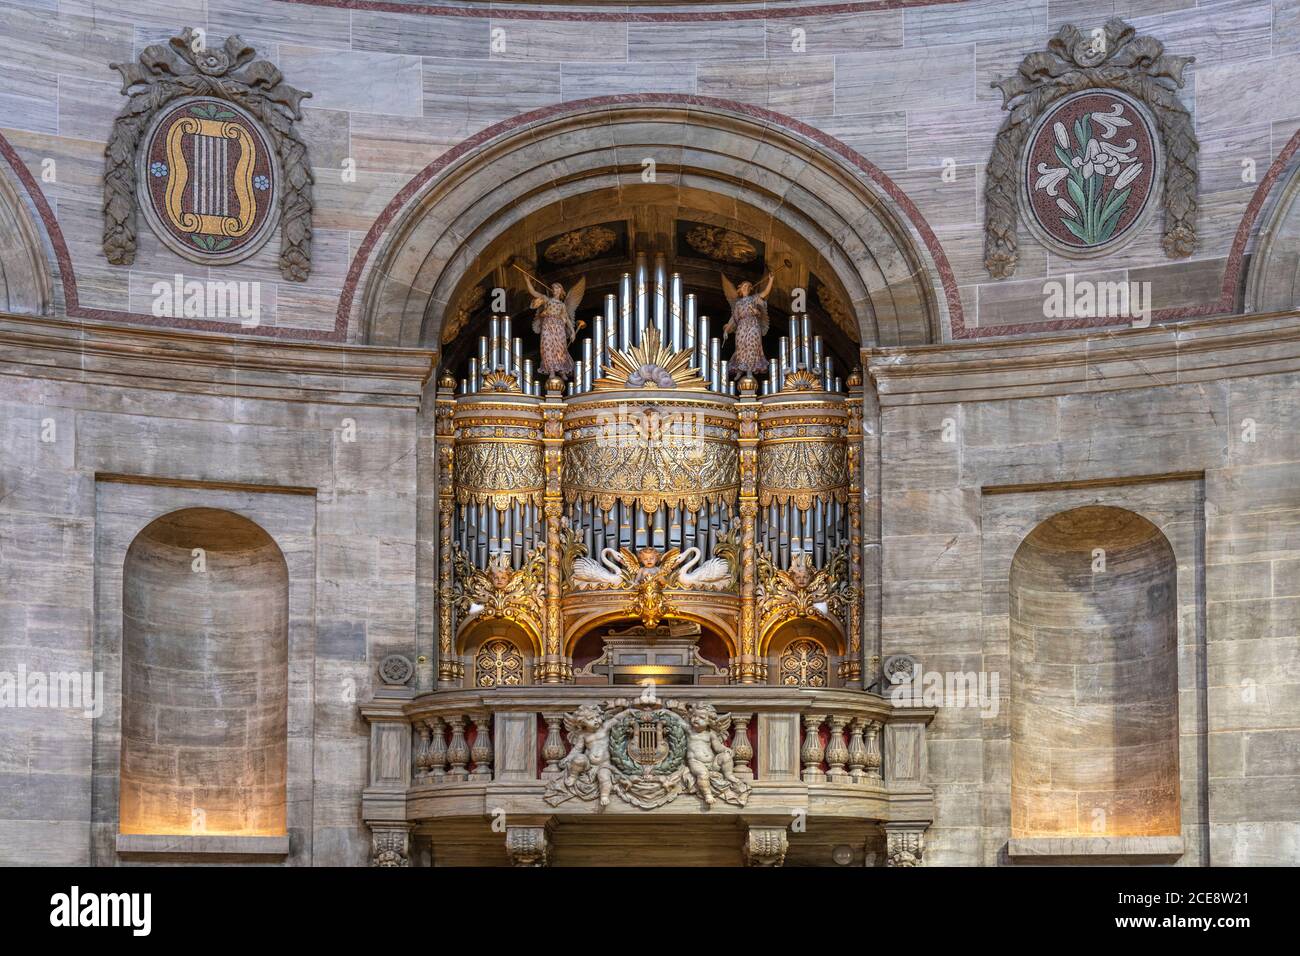 Orgel der Frederikskirche oder  Marmorkirche, Kopenhagen, Dänemark, Europa |  Frederik's Church or The Marble Church organ, Copenhagen, Denmark, Europ Stock Photo